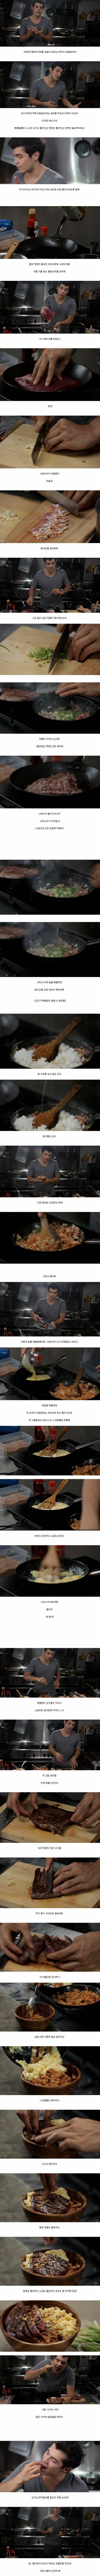 외국인 요리사의 한국식 비빔밥